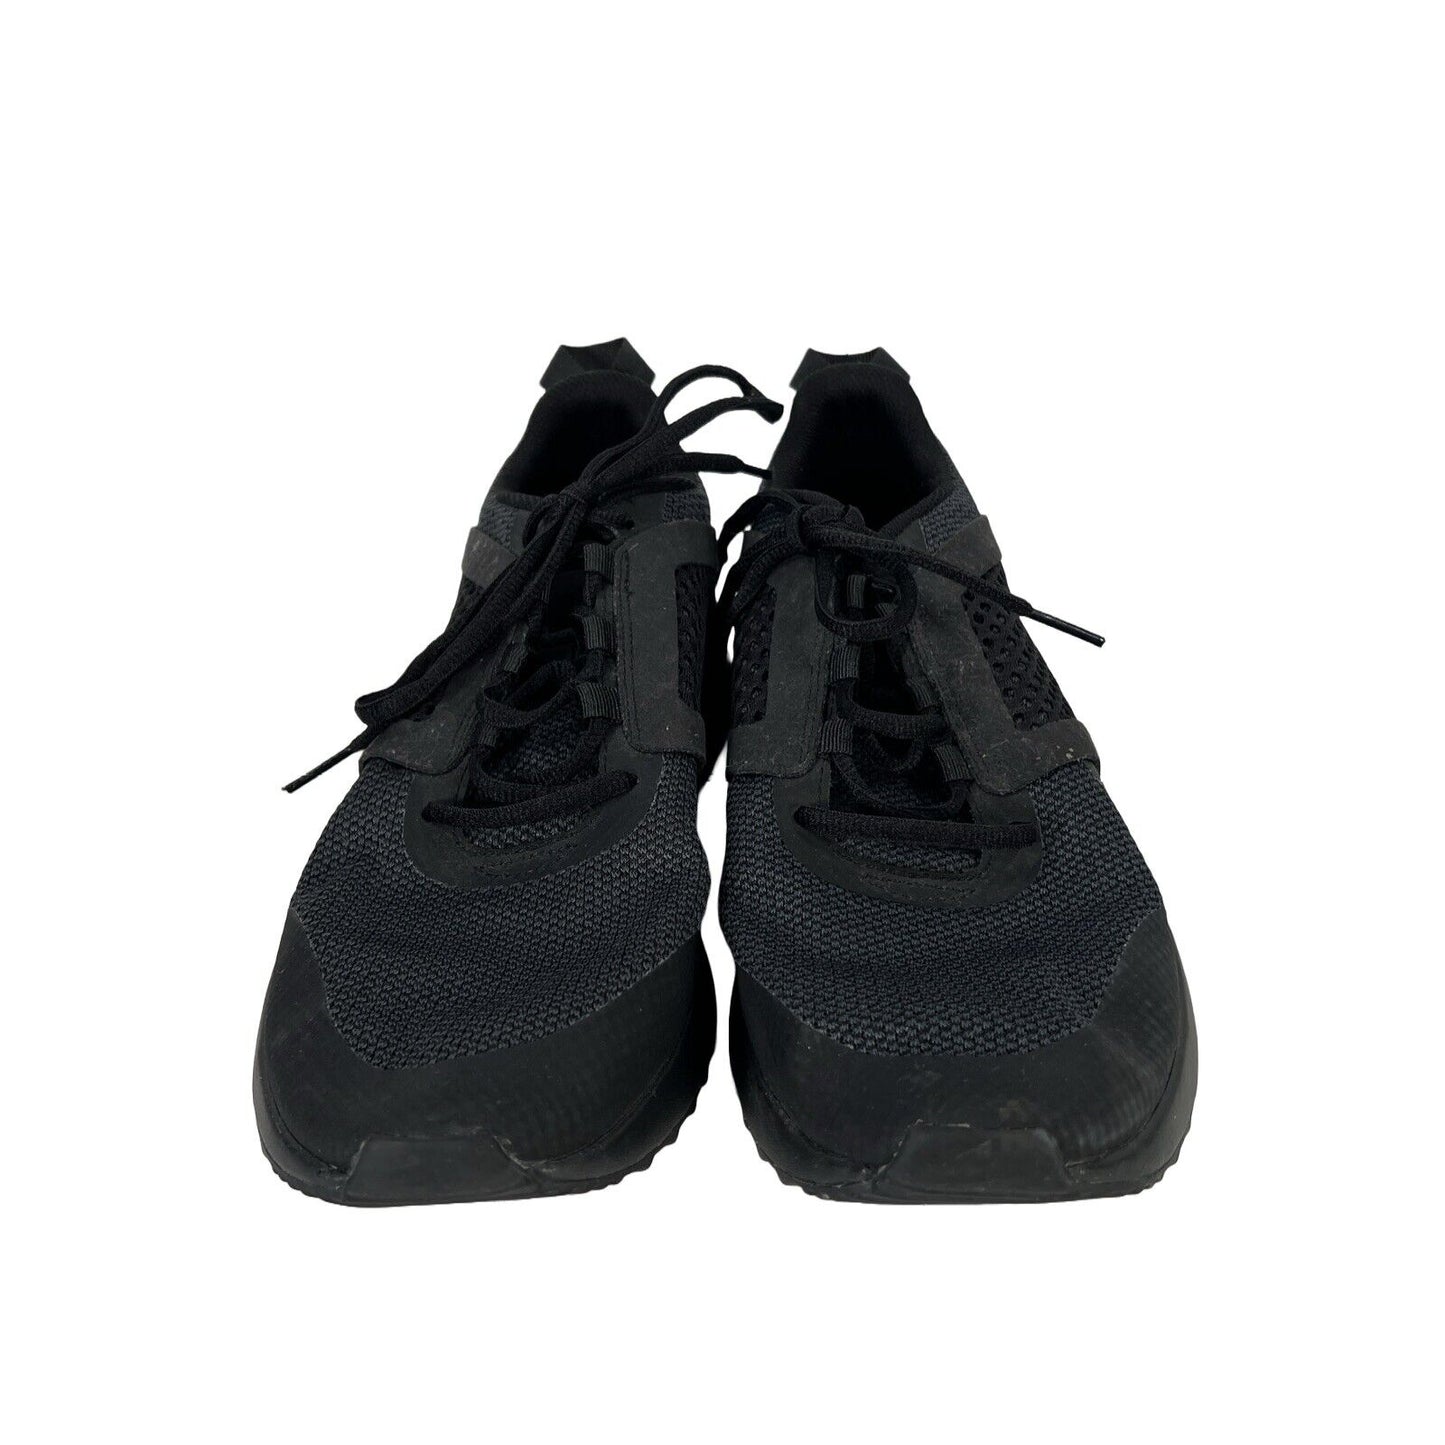 Puma Men's Black Pacer Next Lace Up Athletic Shoes - 10.5